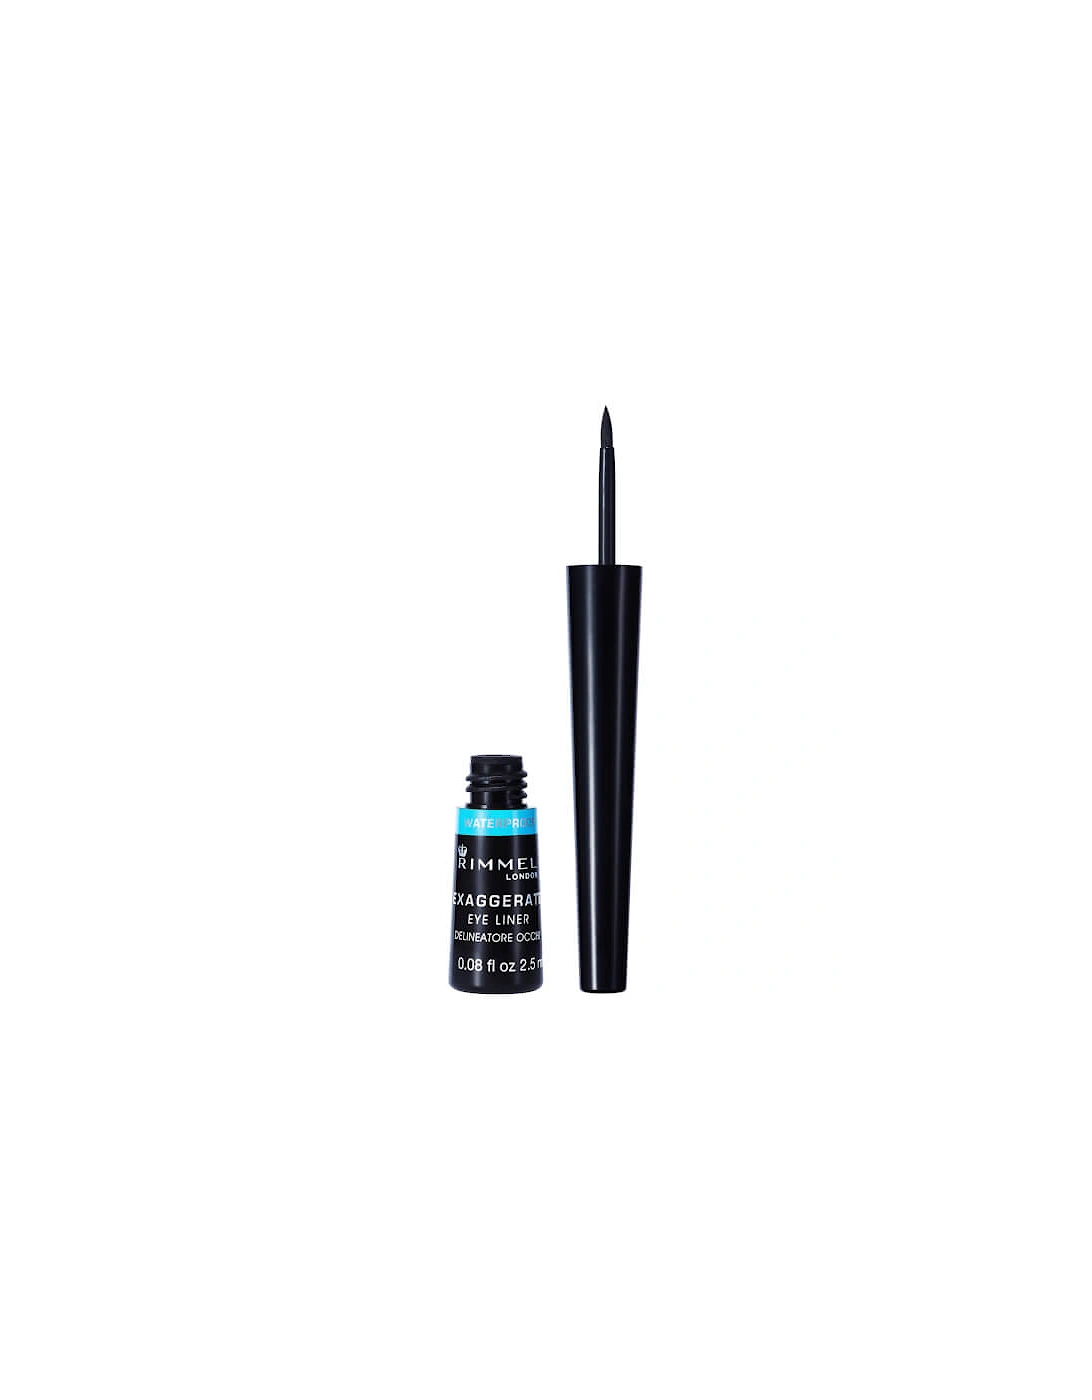 London Exaggerate Waterproof Liquid Eyeliner – 01 – Black, 2.5ml, 2 of 1